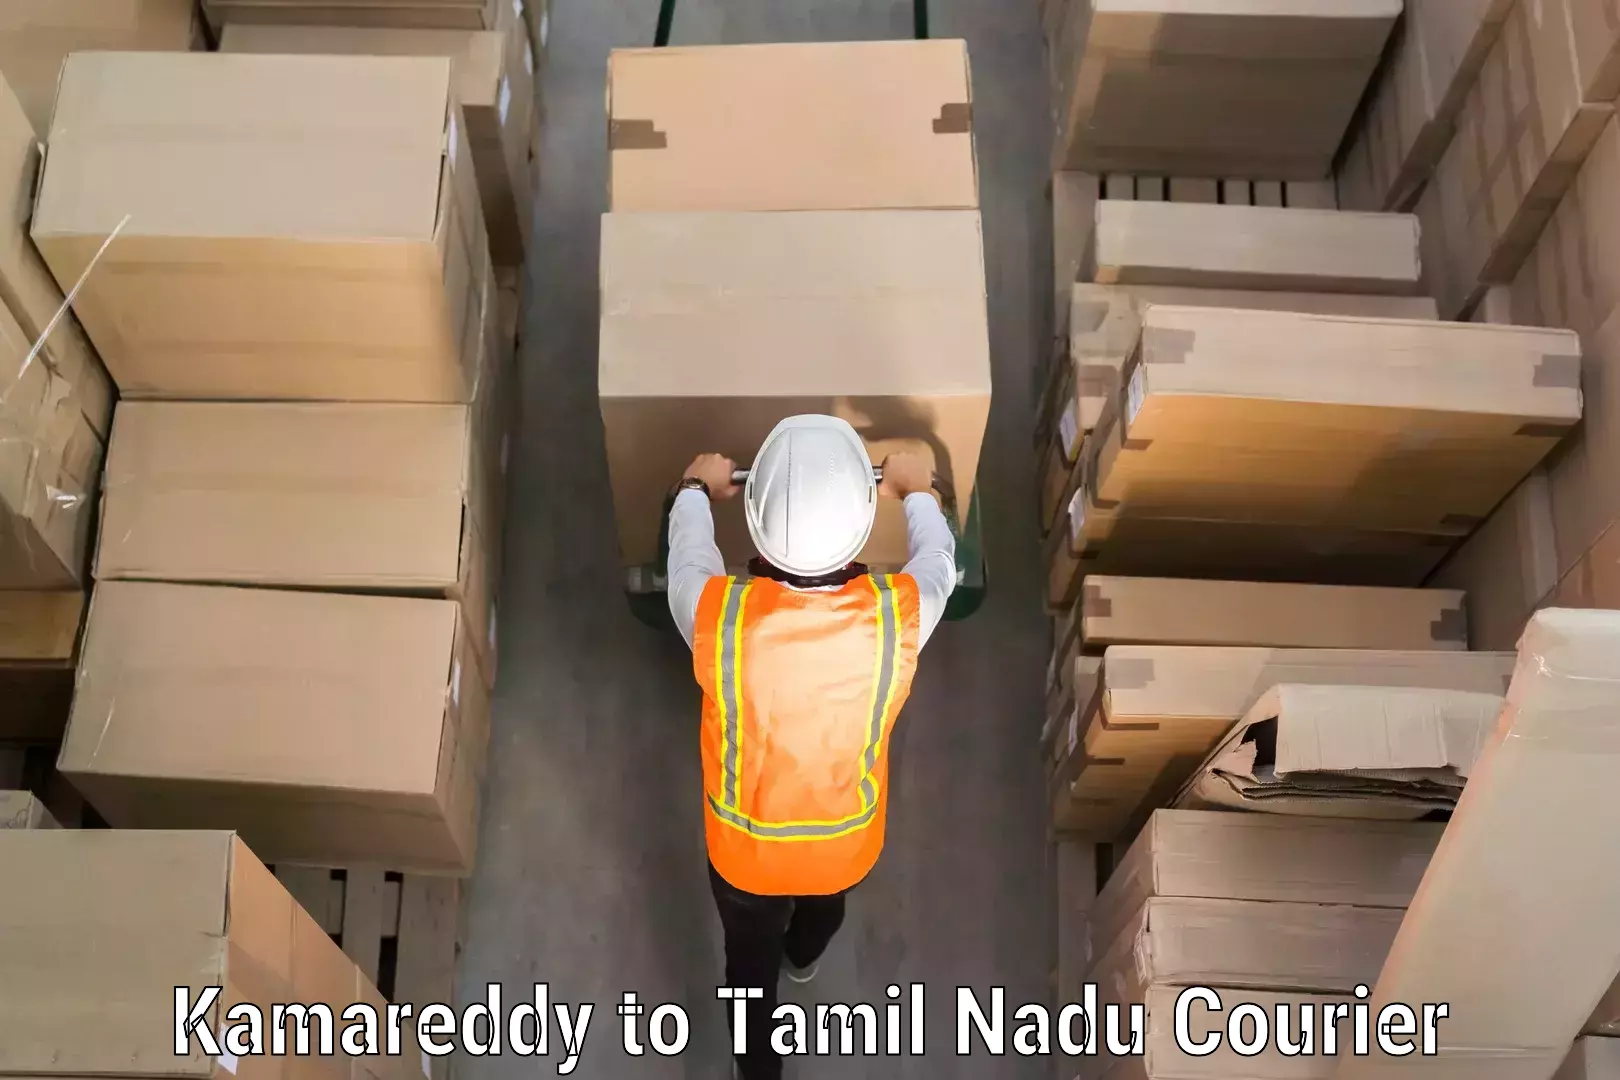 Luggage transport service Kamareddy to Thiruvadanai